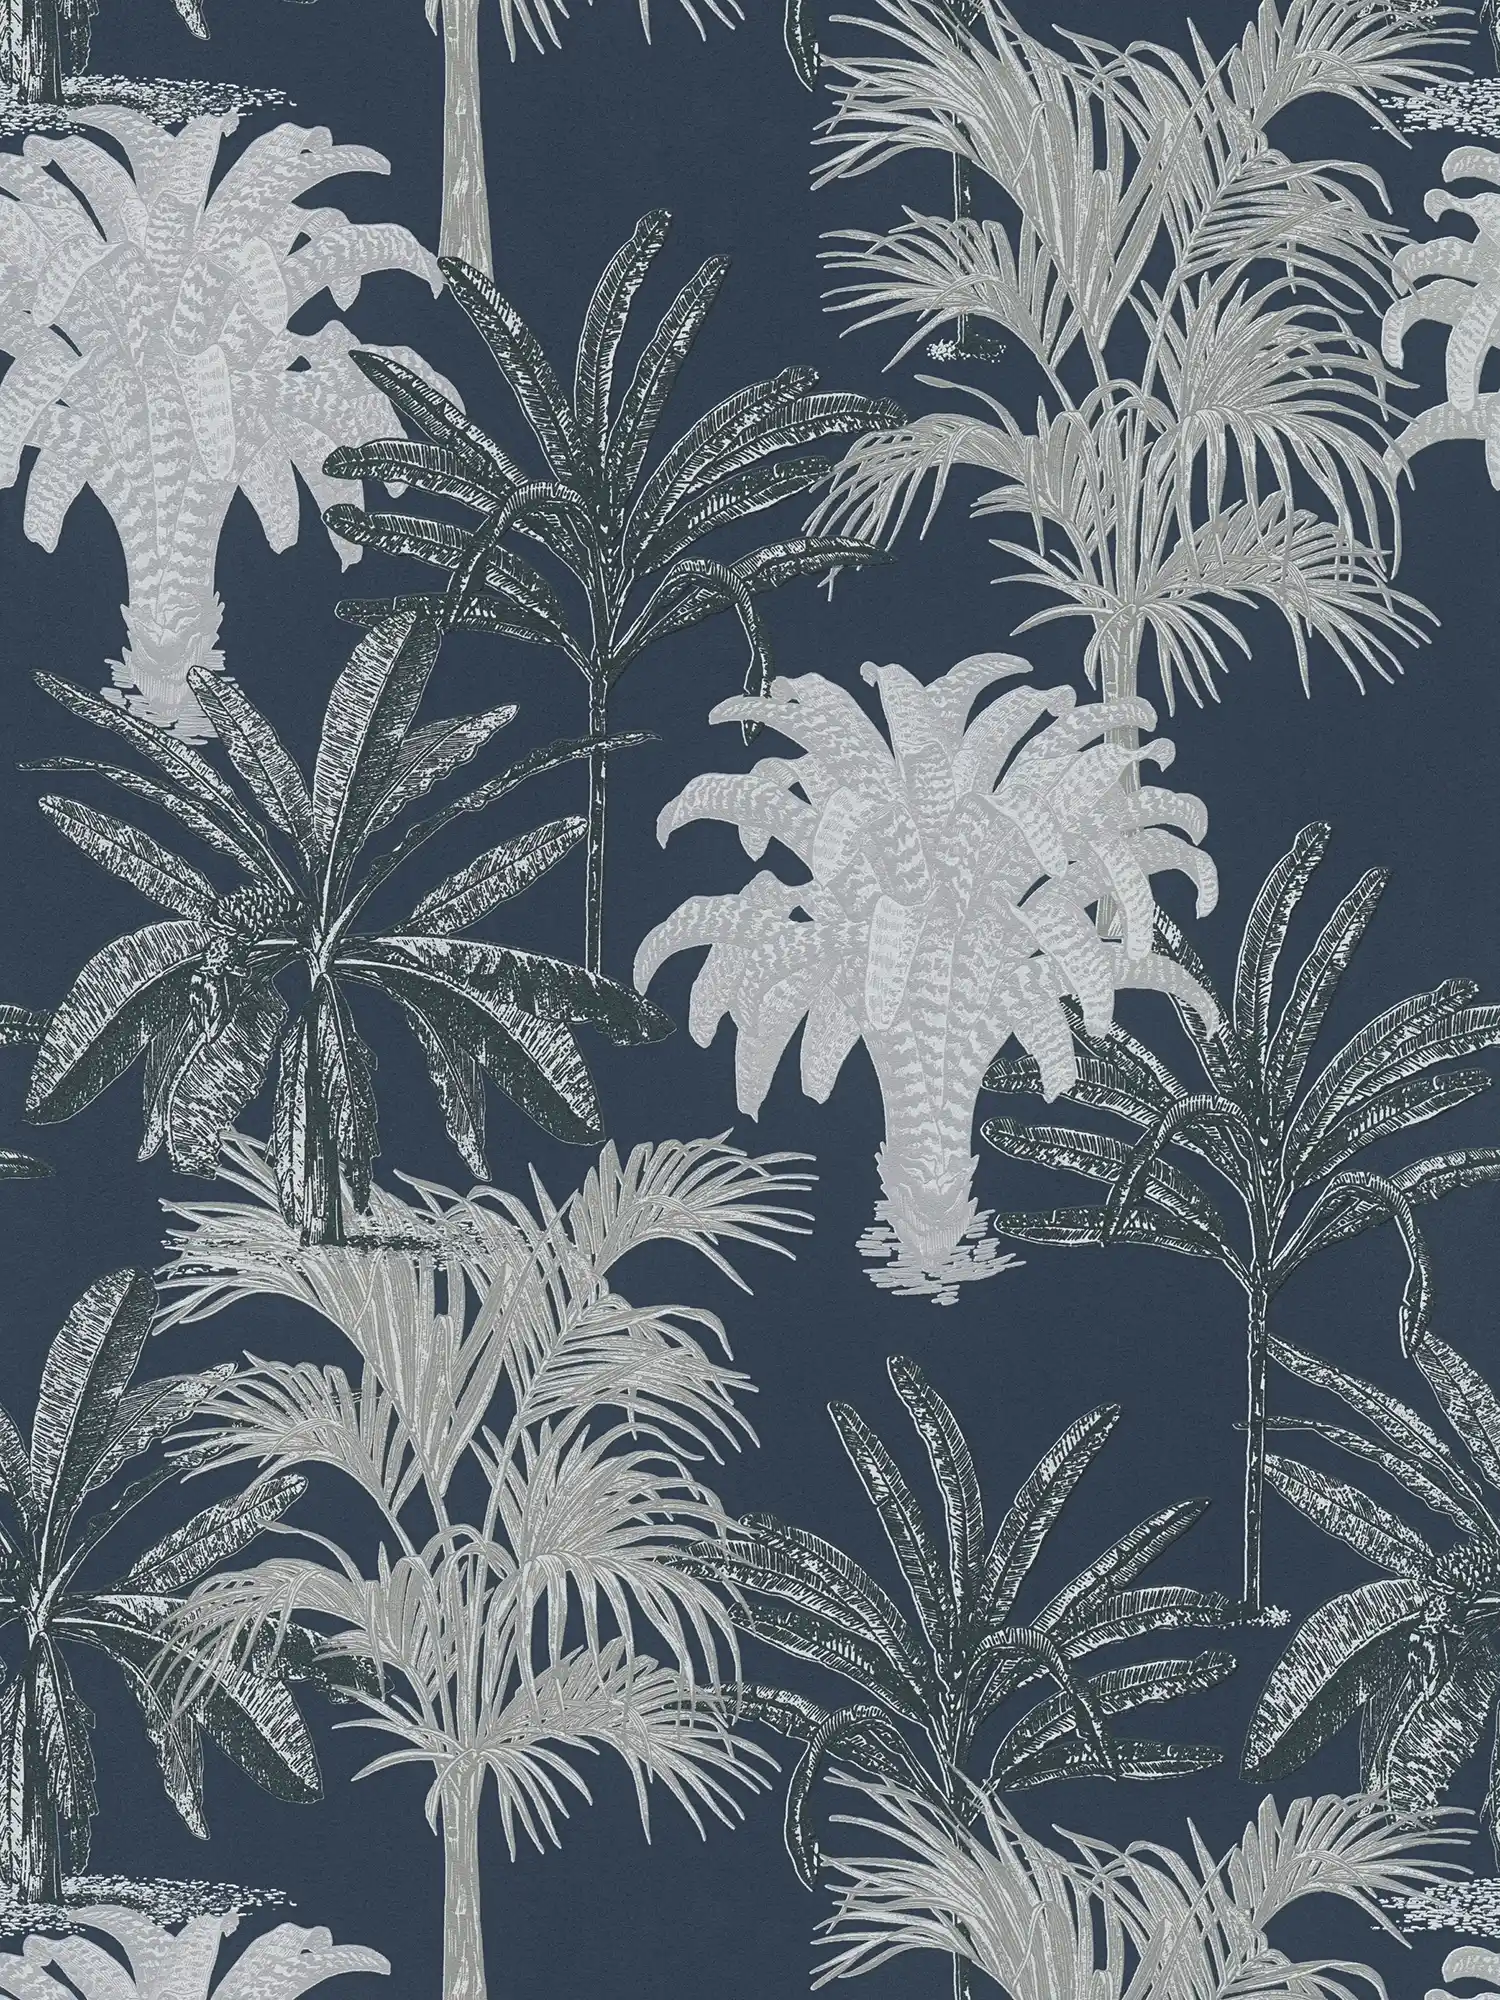 Palmbehang MICHASLKY donkerblauw met structuurpatroon - blauw, grijs
